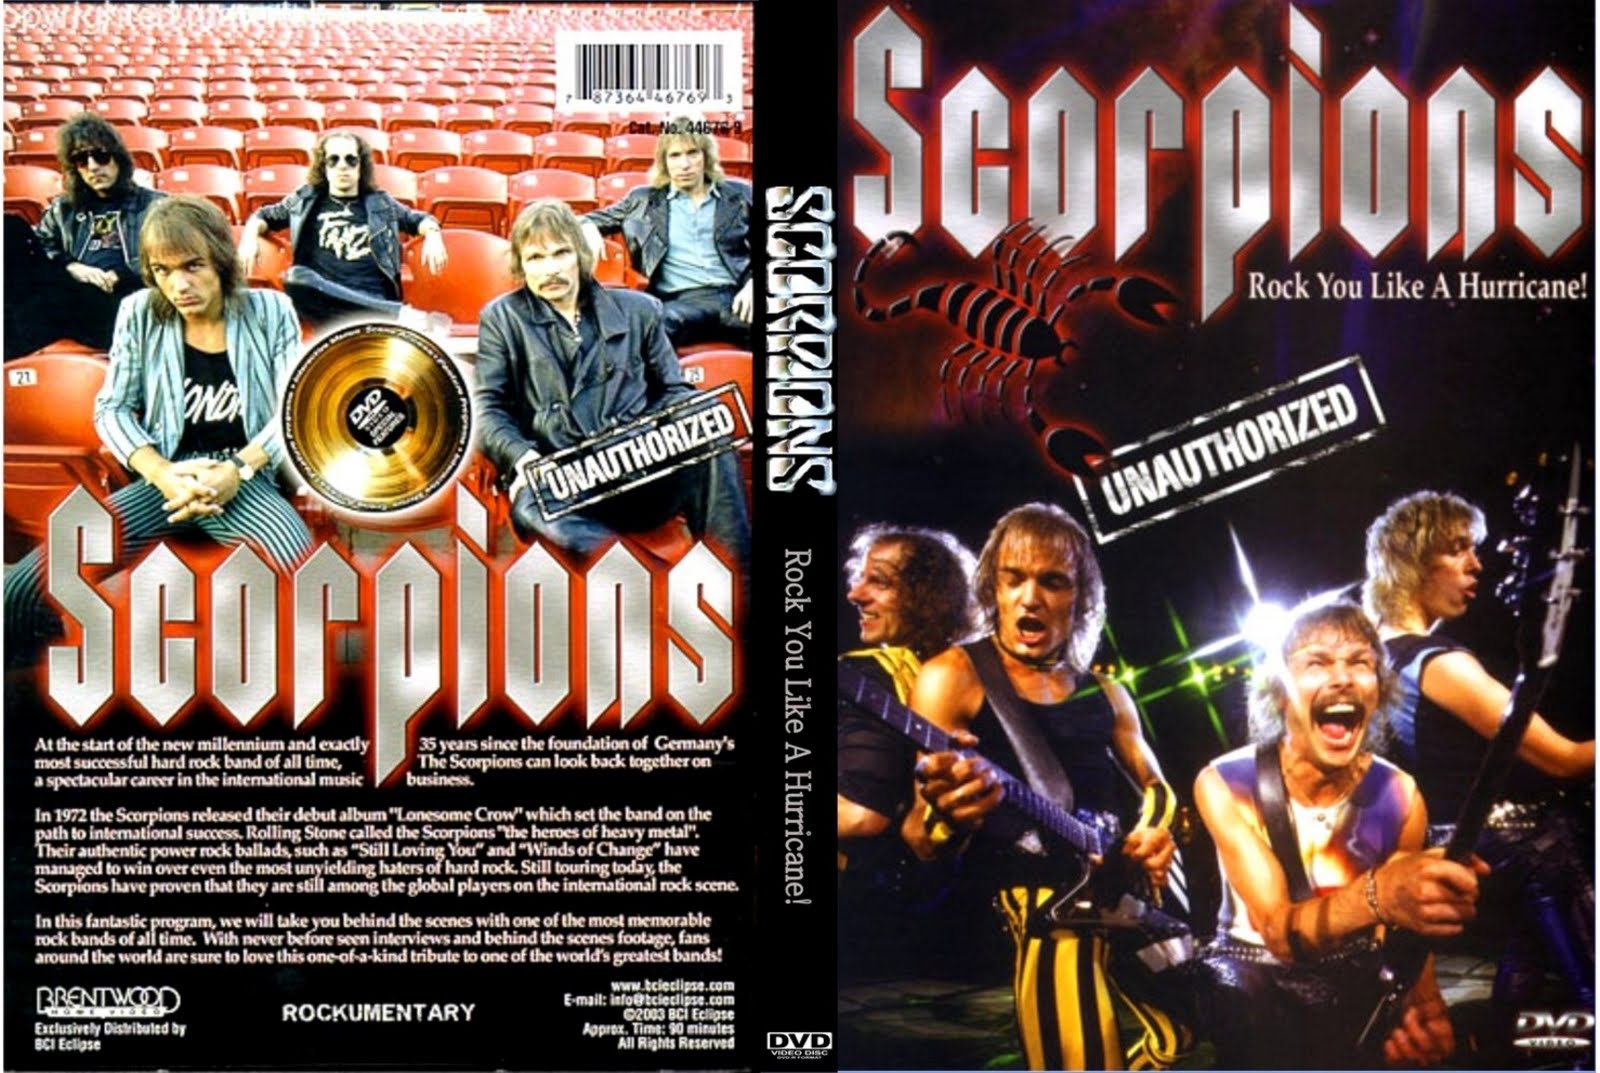 Scorpions like hurricane. Scorpions 1988 обложка. Обложки дисков скорпионс. Scorpions DVD концерты. Rock you like a Hurricane обложка.